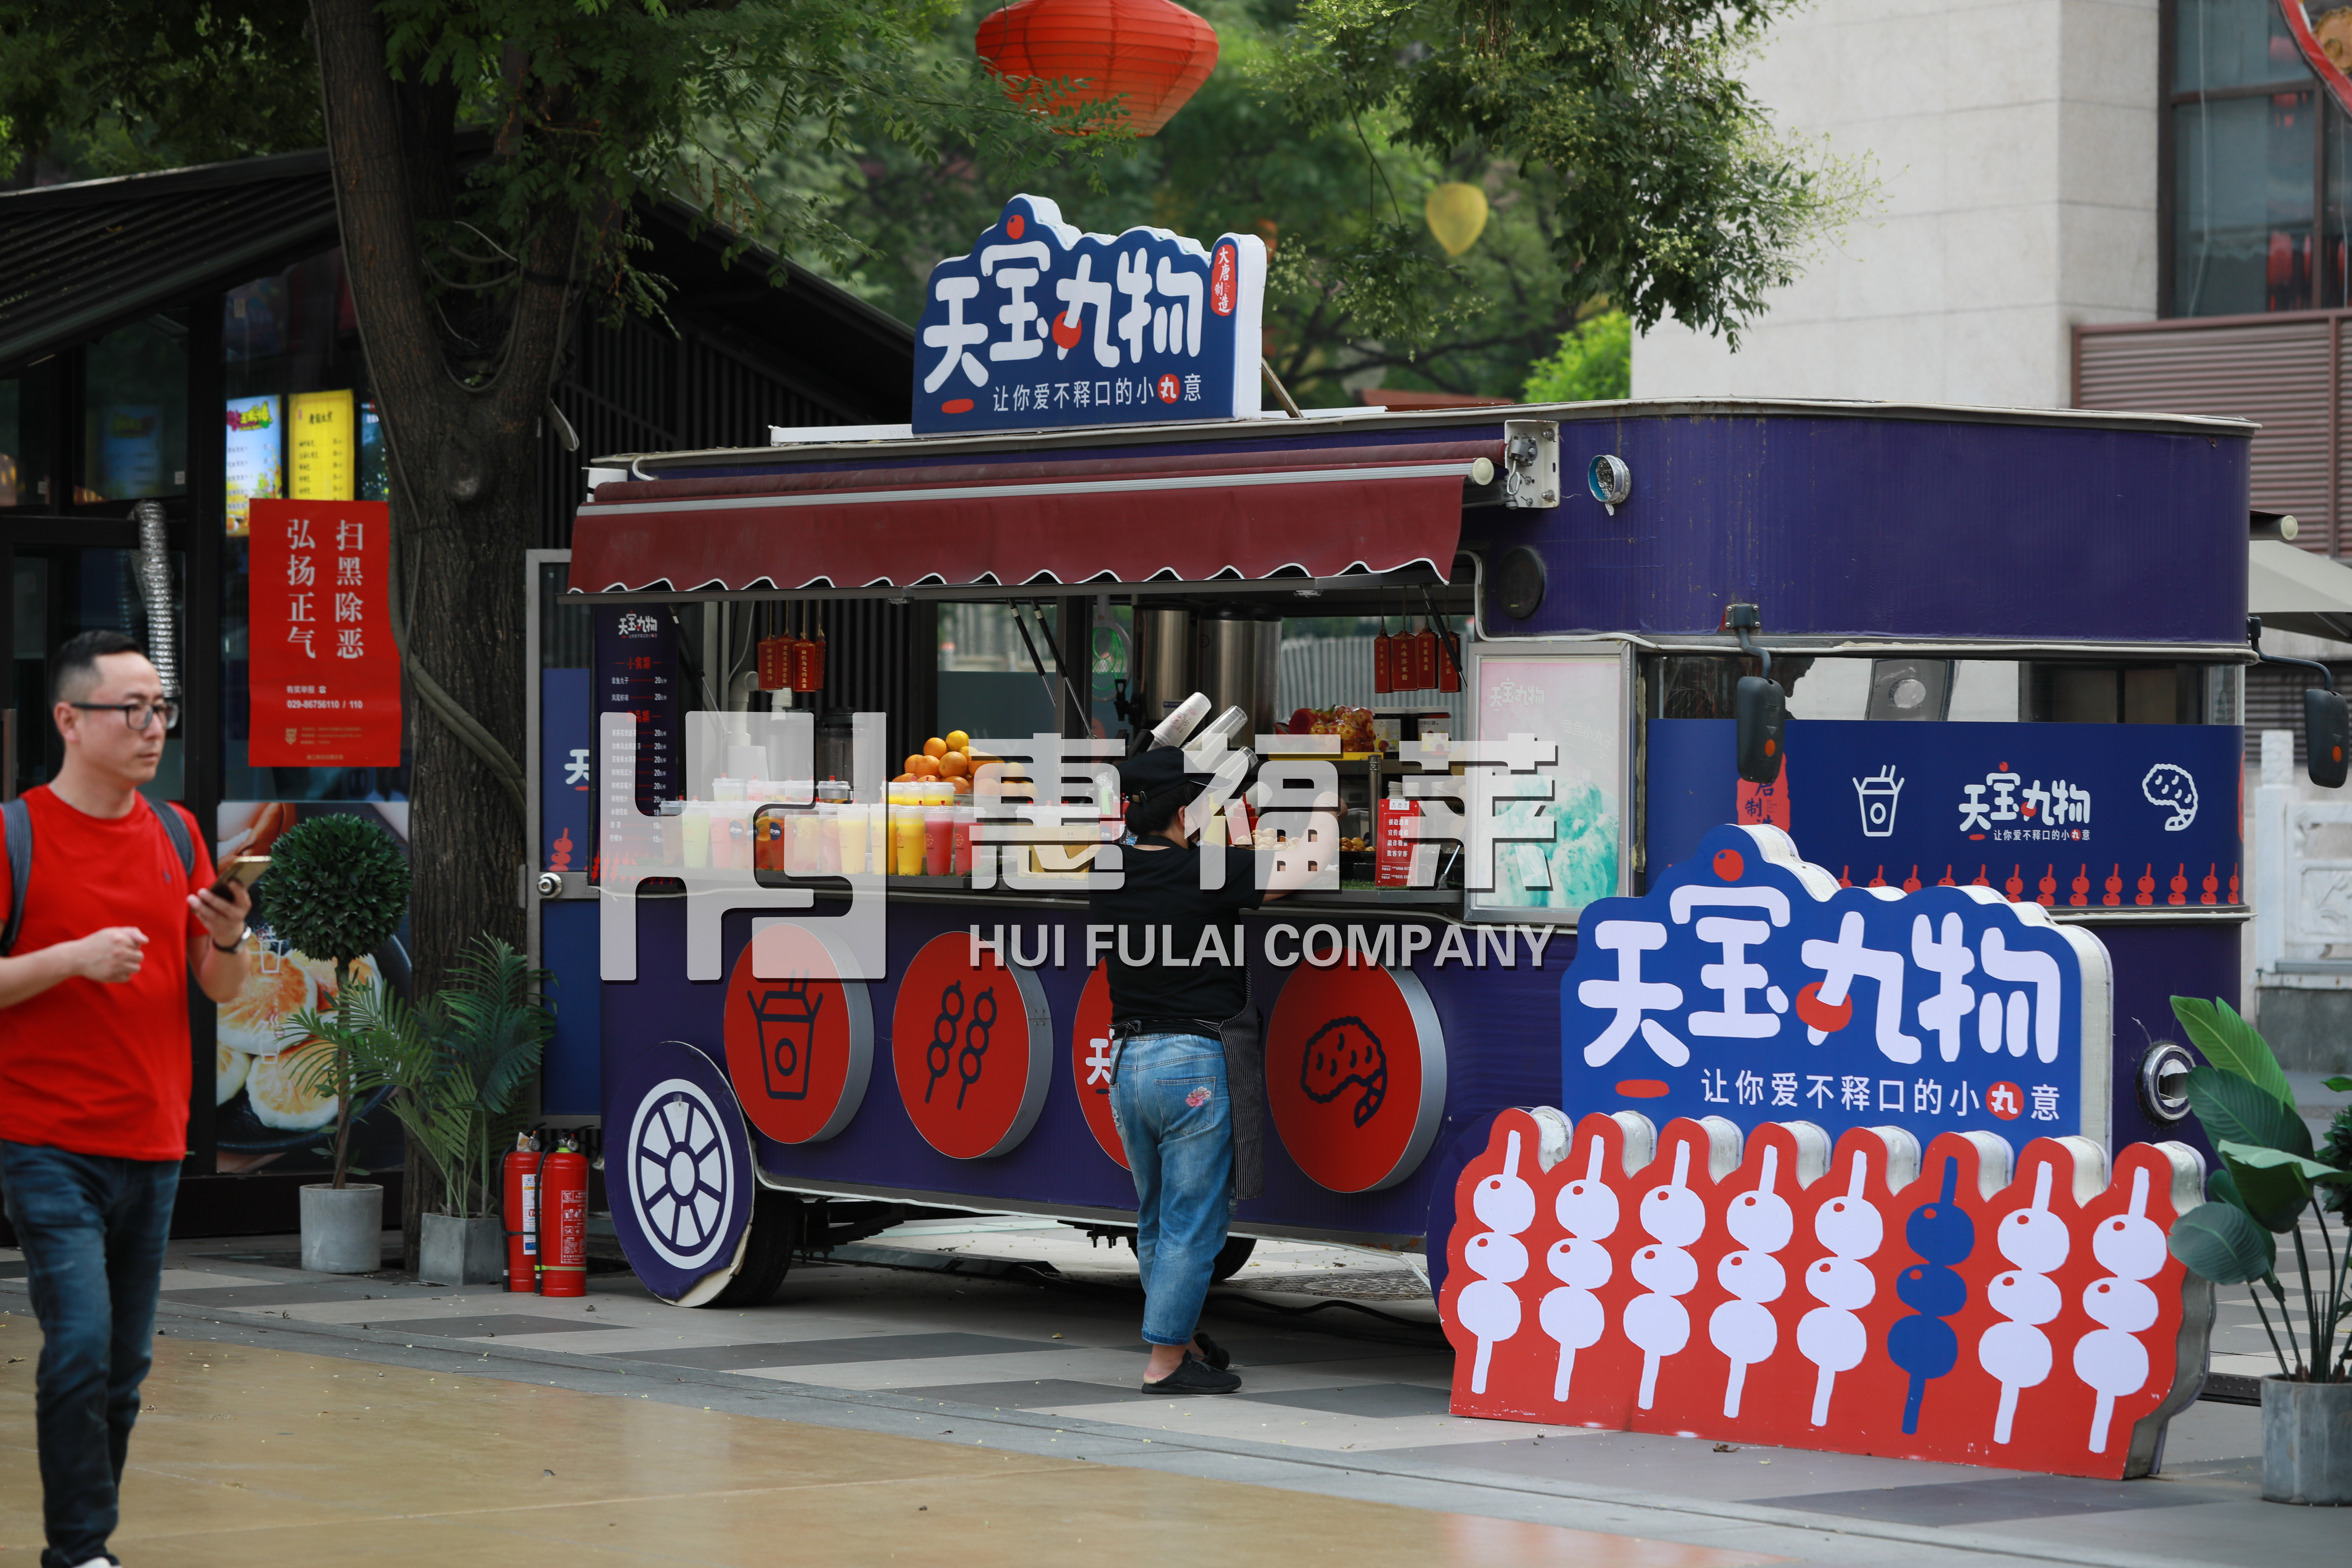 惠福莱流动餐车打造潮流示范街区,成为新的城市名片